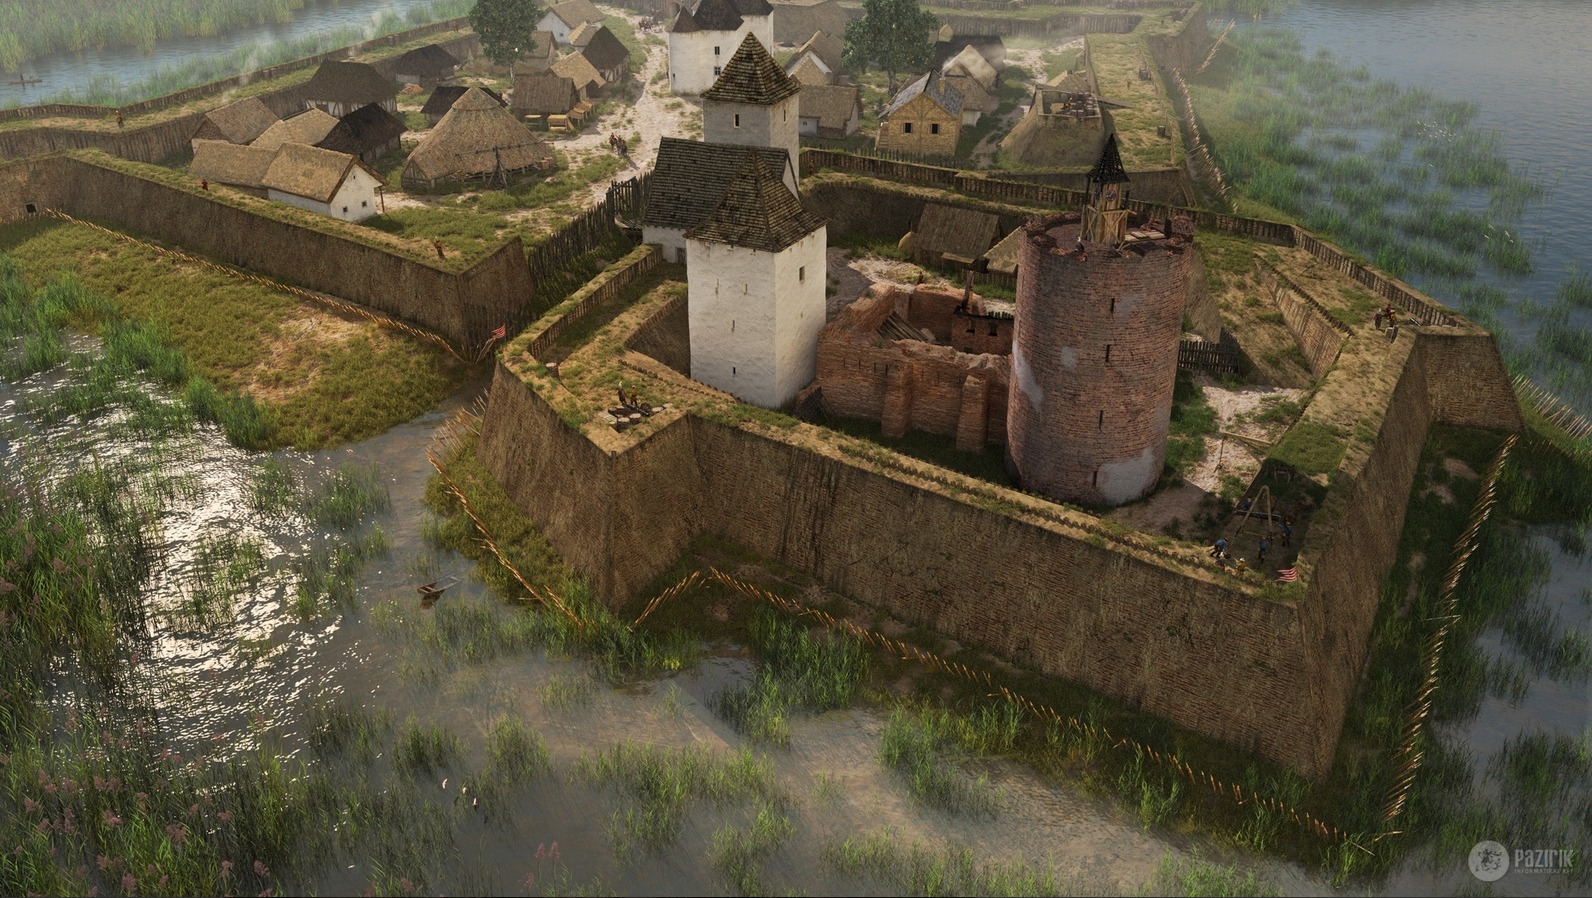 Autre vue du château − Pazirik Ltd. http://pazirik.hu/en/projekt/sziget-1566/